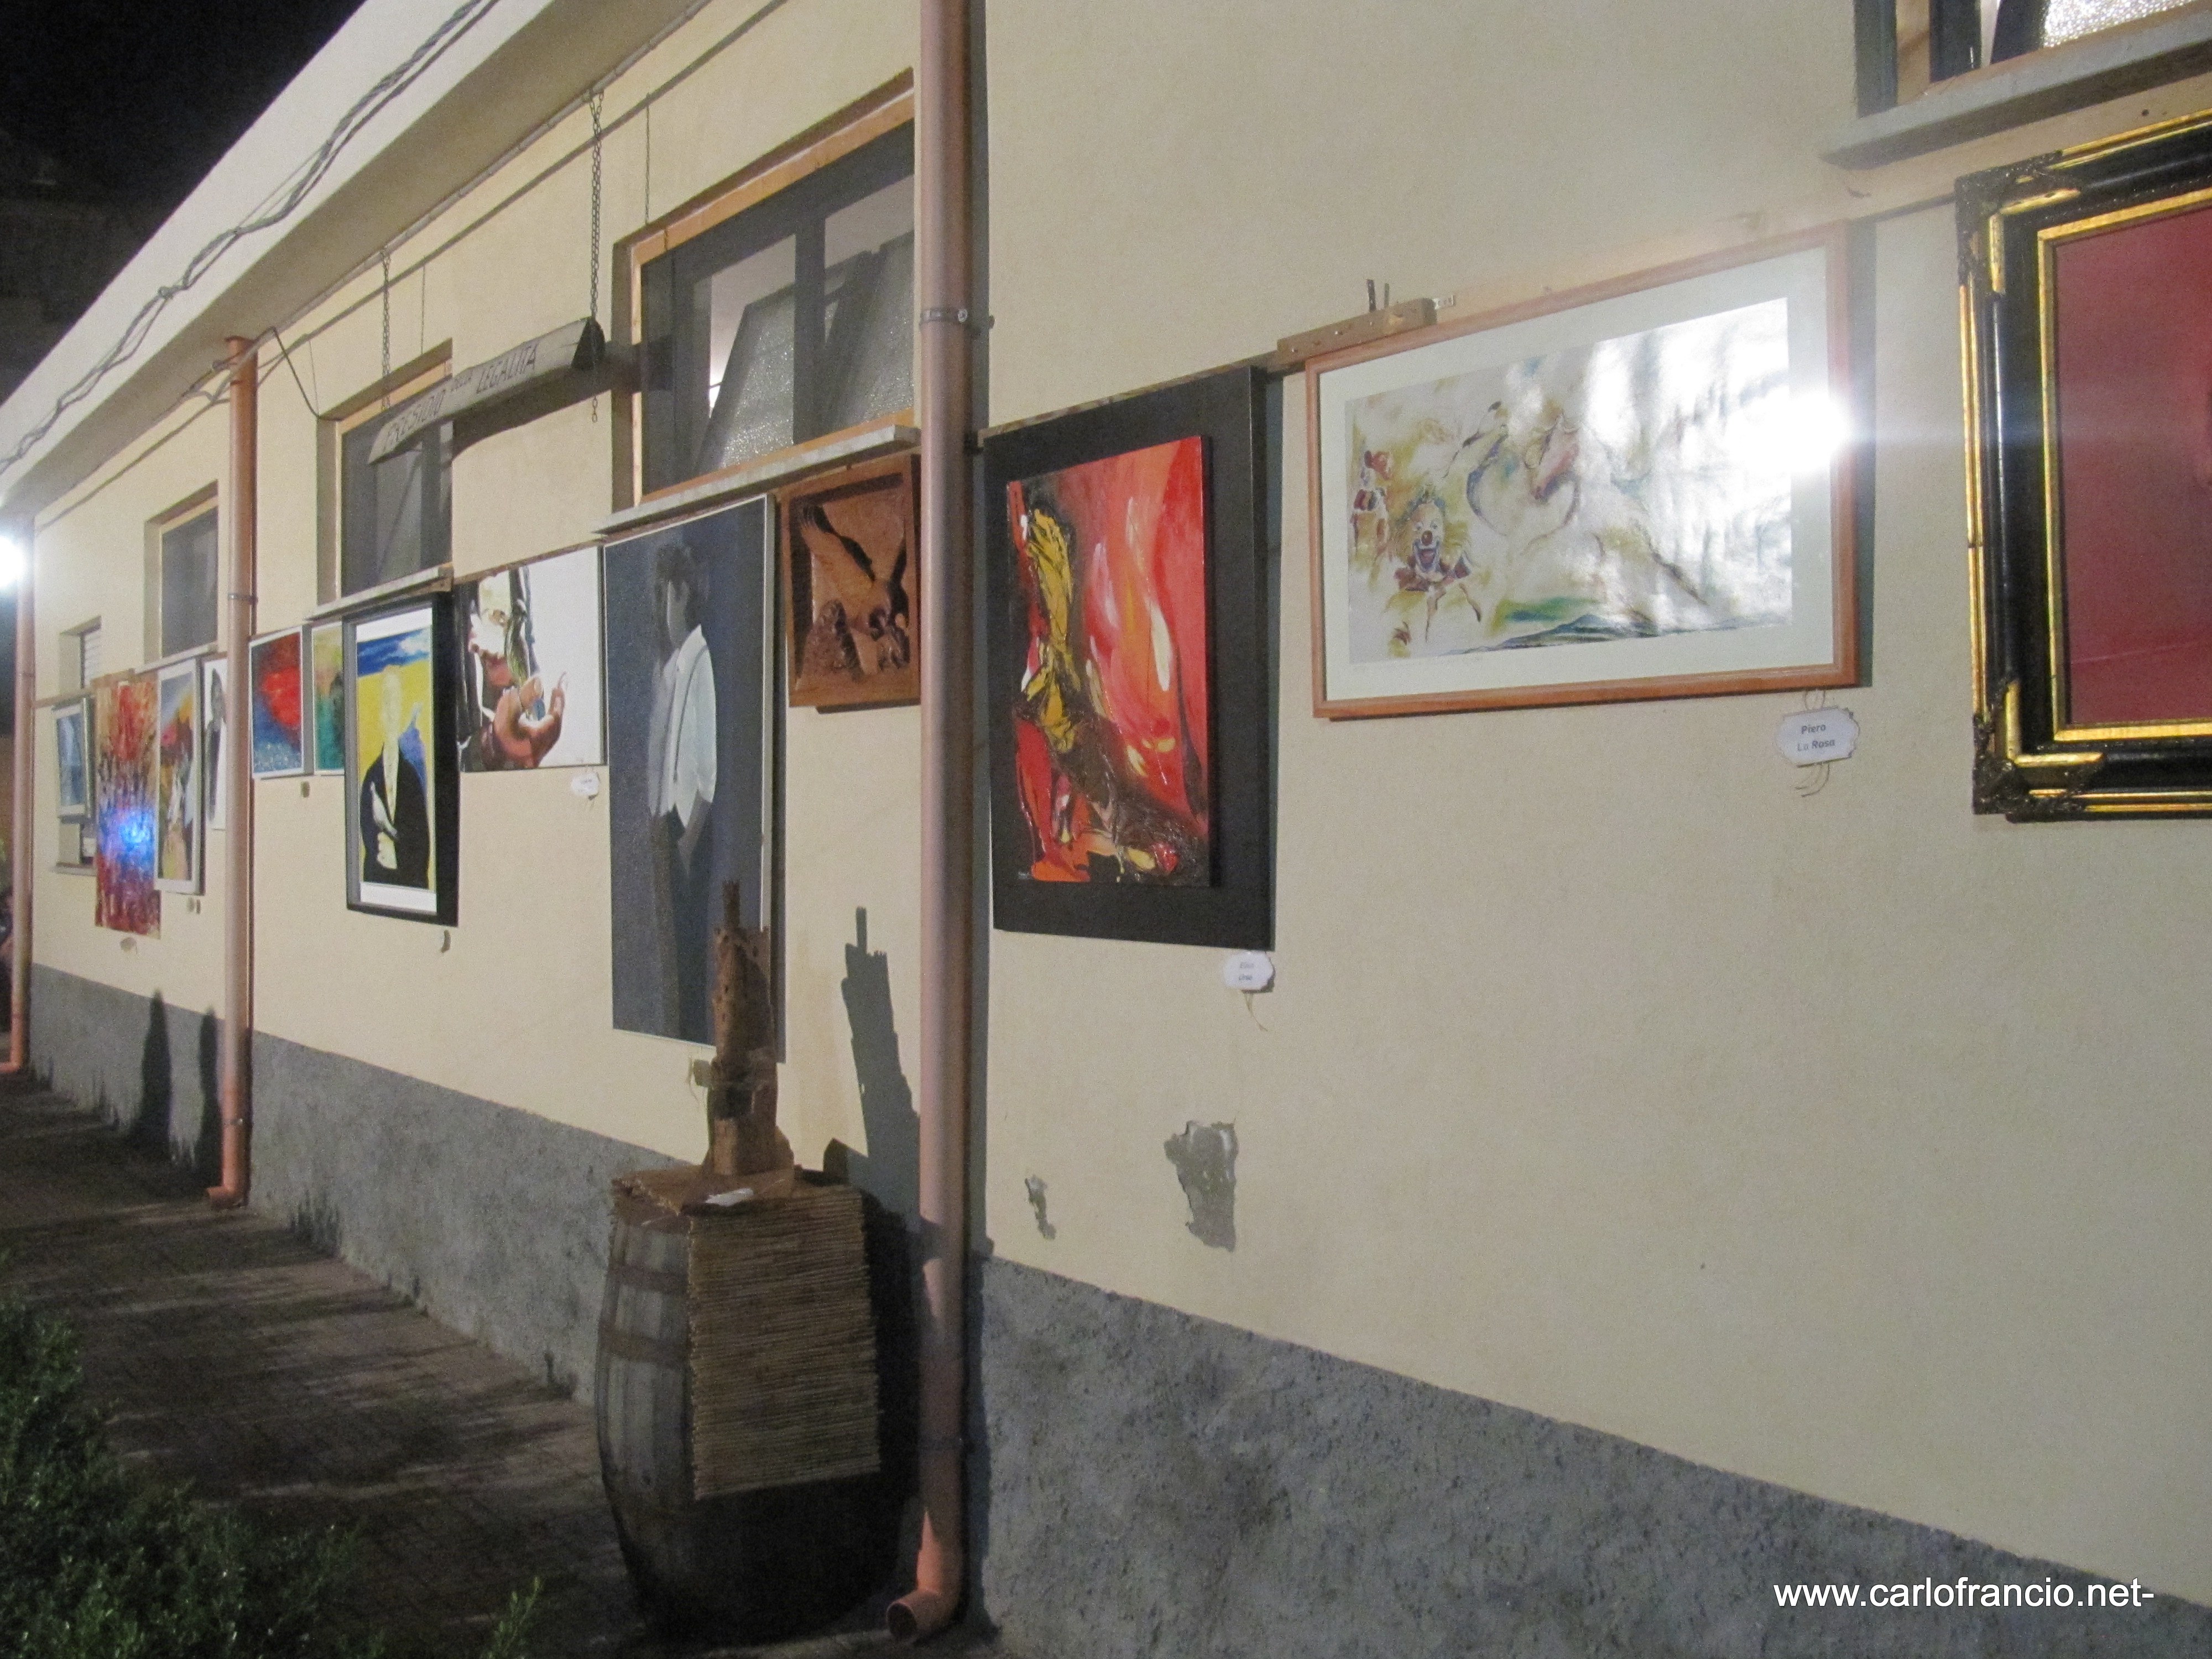 Ponti-Pialesi - 21a Edizione Cena dei Rioni 2018- Arte e Legalità... Sotto Le Stelle! Mostra Artistica